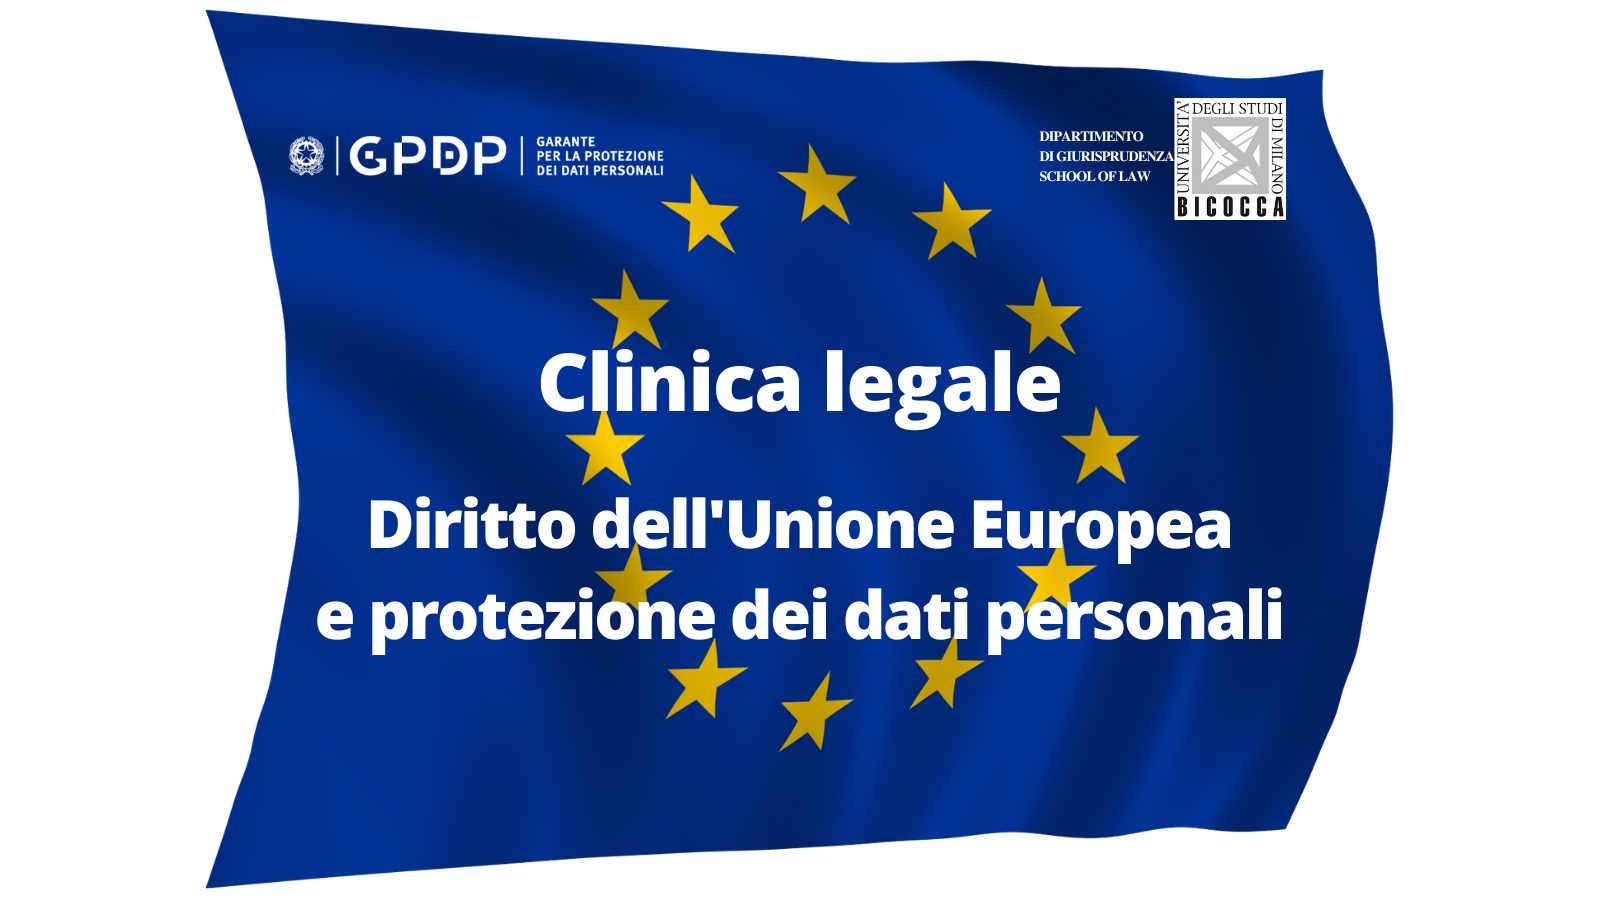 8 marzo, Clinica legale: “Diritto dell’Unione Europea e Protezione dei dati personali”, Università Milano-Bicocca